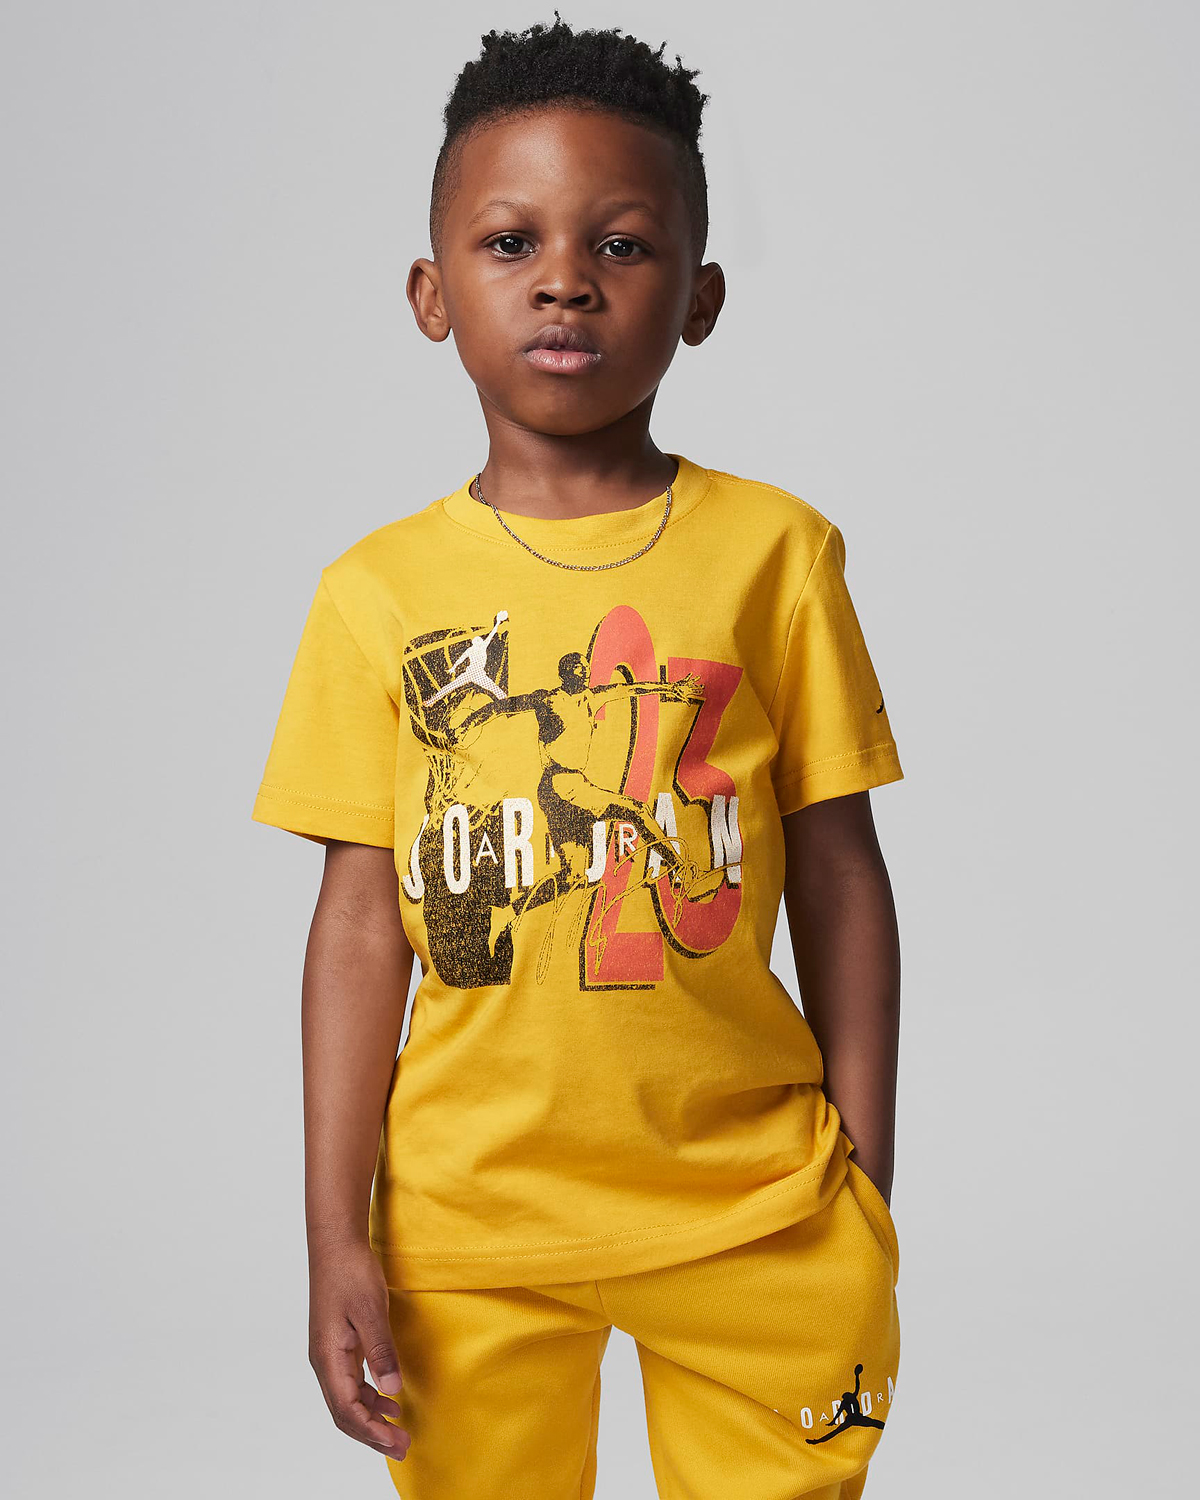 Jordan-Little-Kids-Graphic-T-Shirt-Yellow-Ochre-Preschool